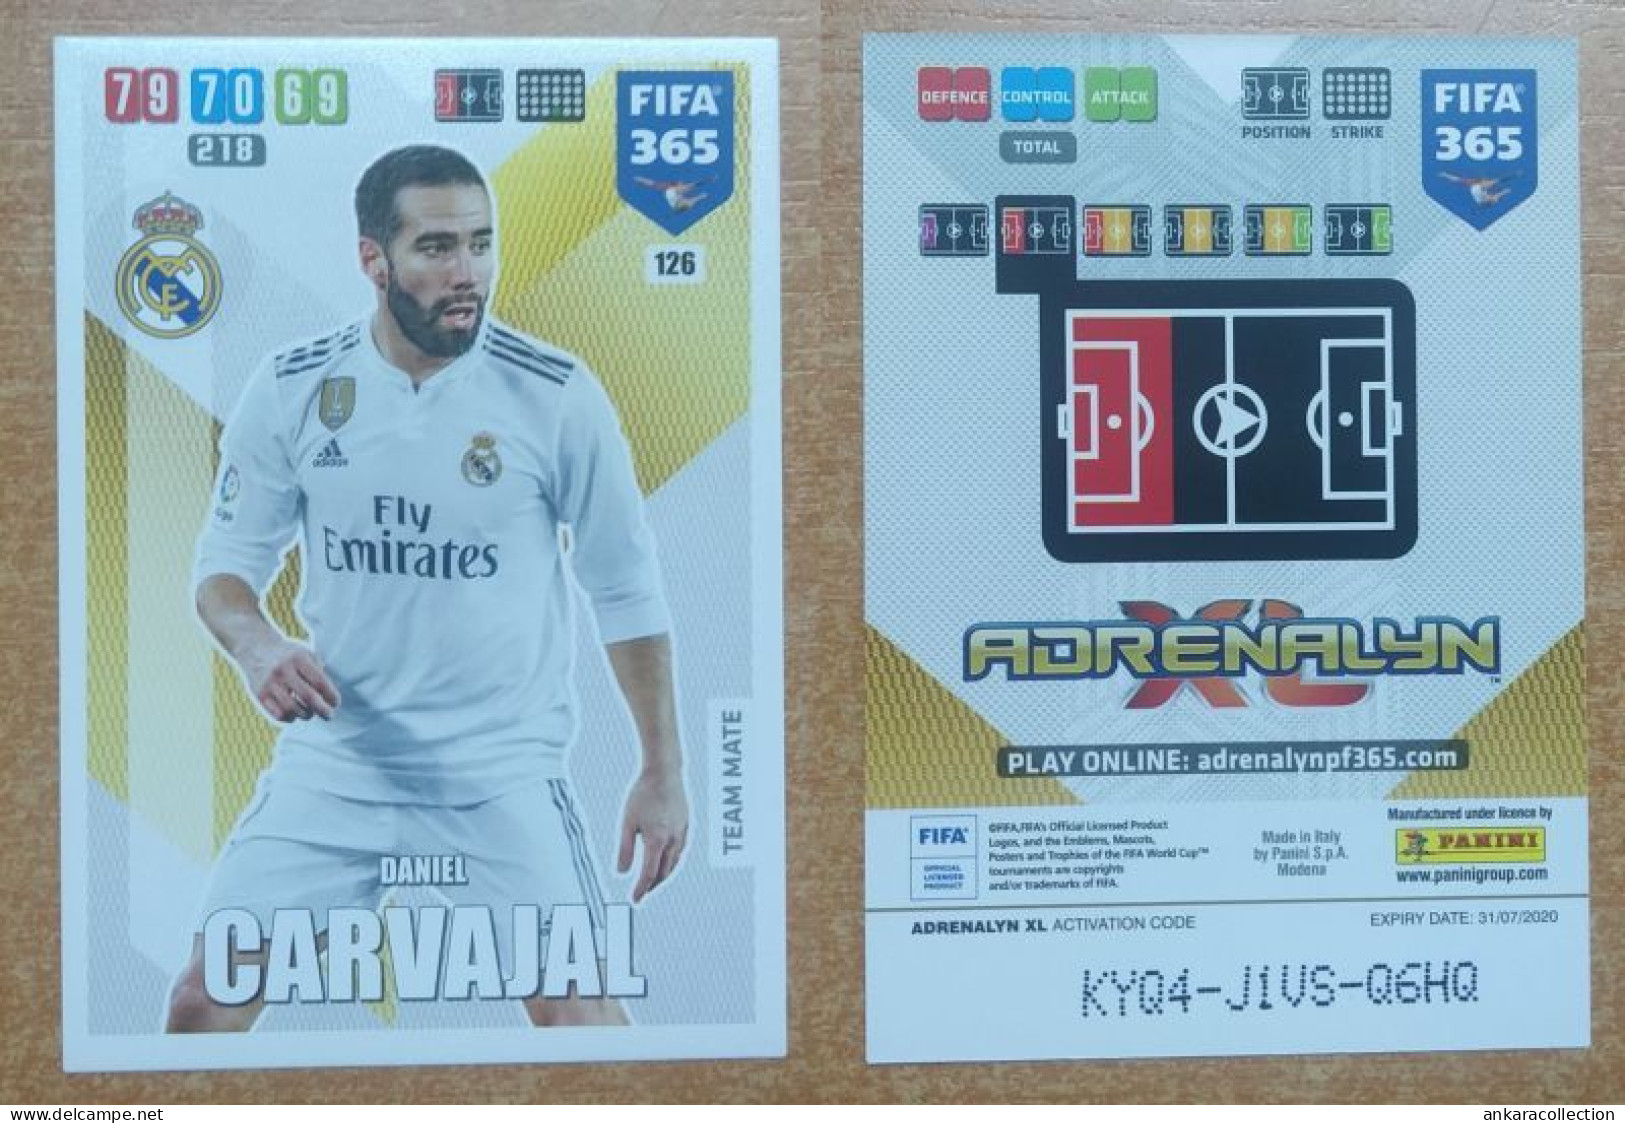 AC - 126 DANIEL CARVAJAL  REAL MADRID CF  PANINI FIFA 365 2020 ADRENALYN TRADING CARD - Tarjetas